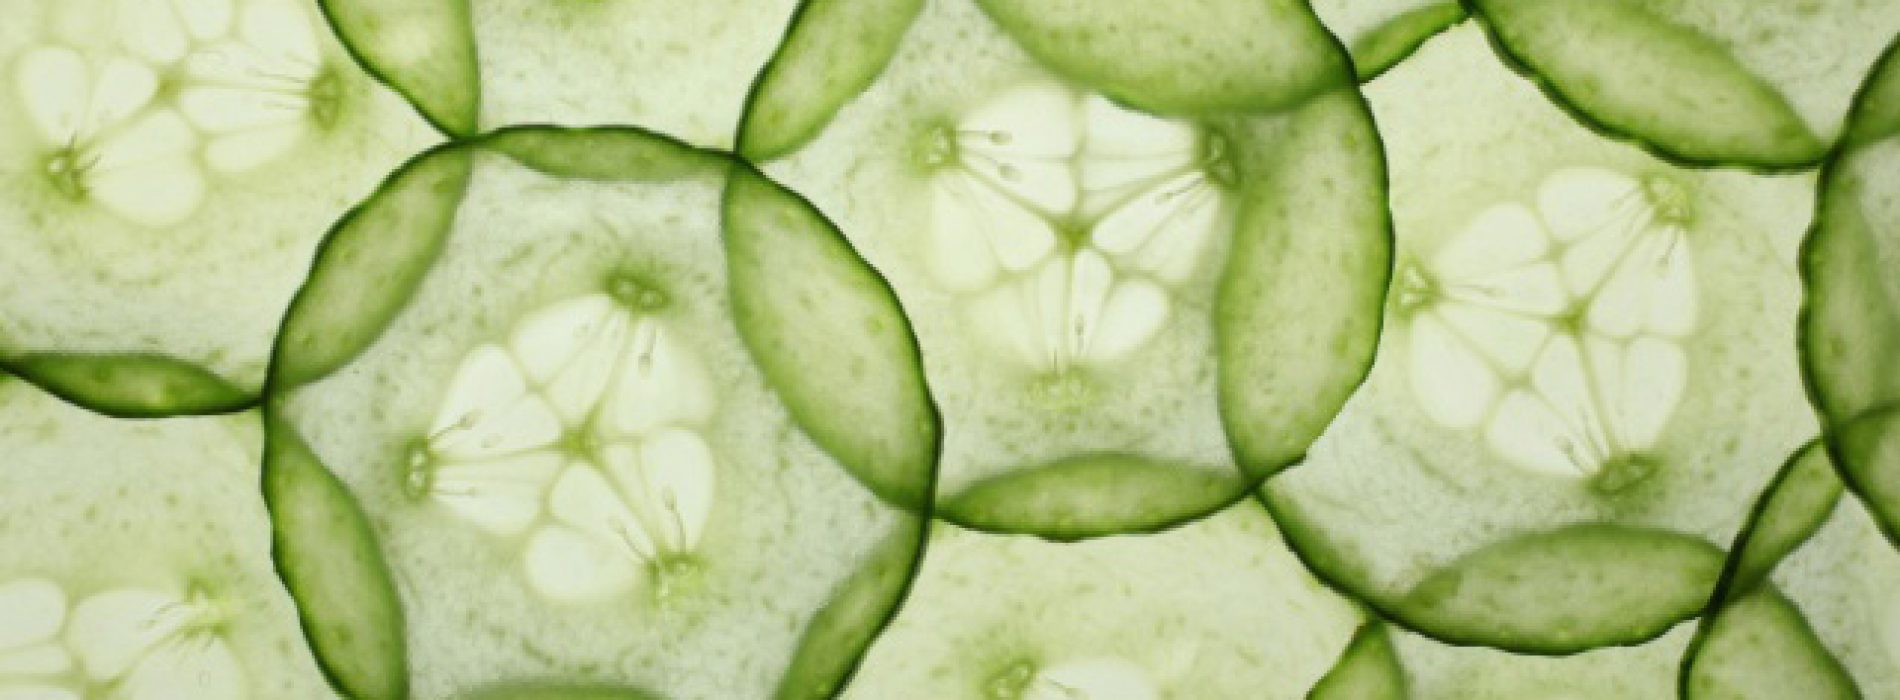 Komkommers bestrijden kanker, hartziekte en meer